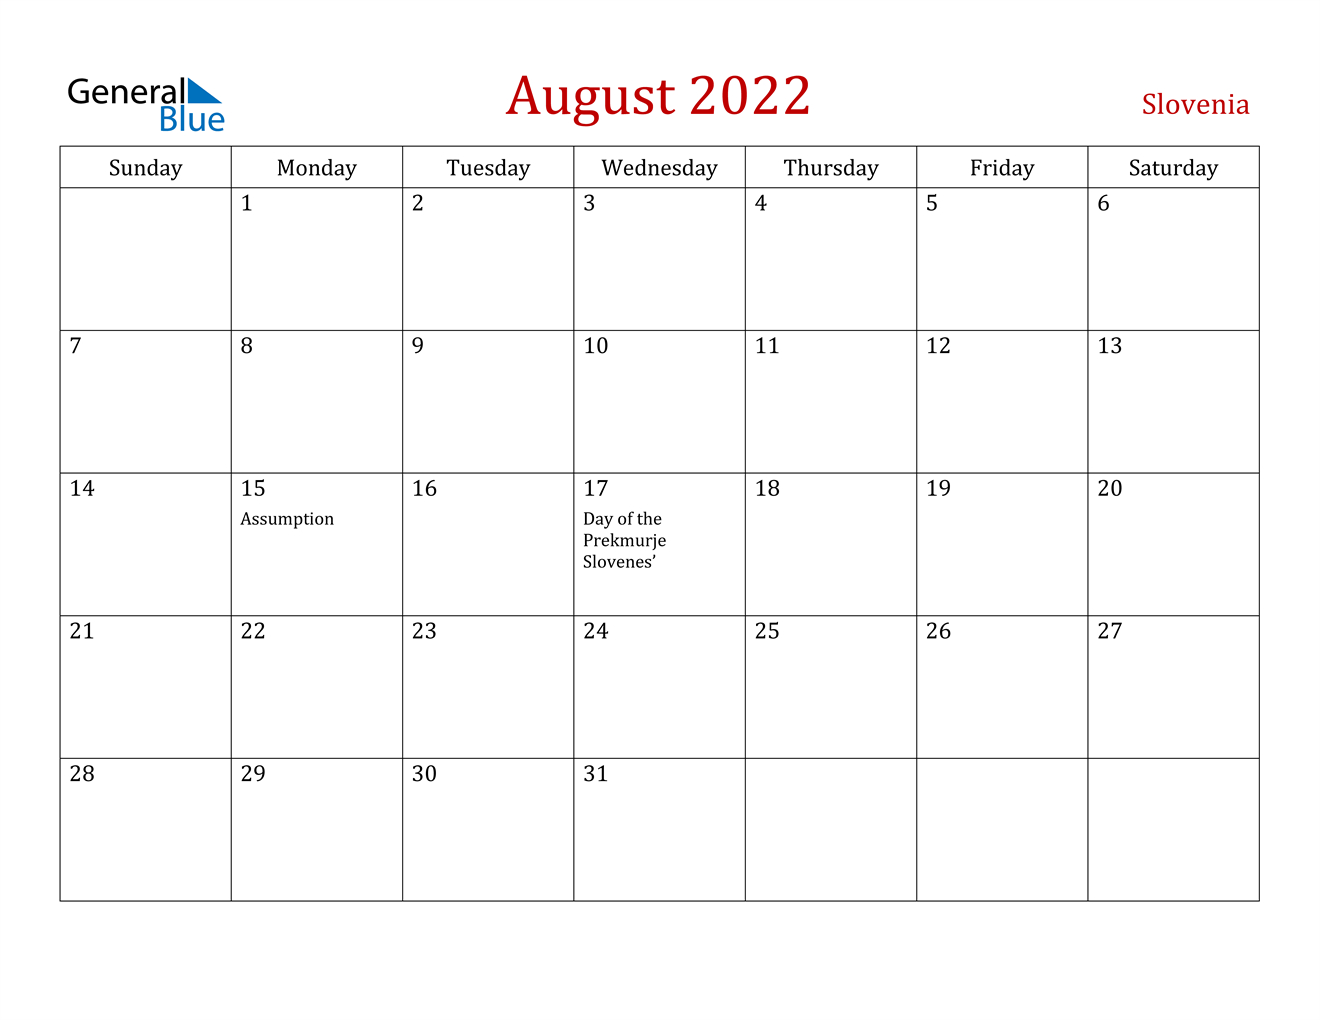 August 2022 Calendar - Slovenia  Printable Calendar 2022 August